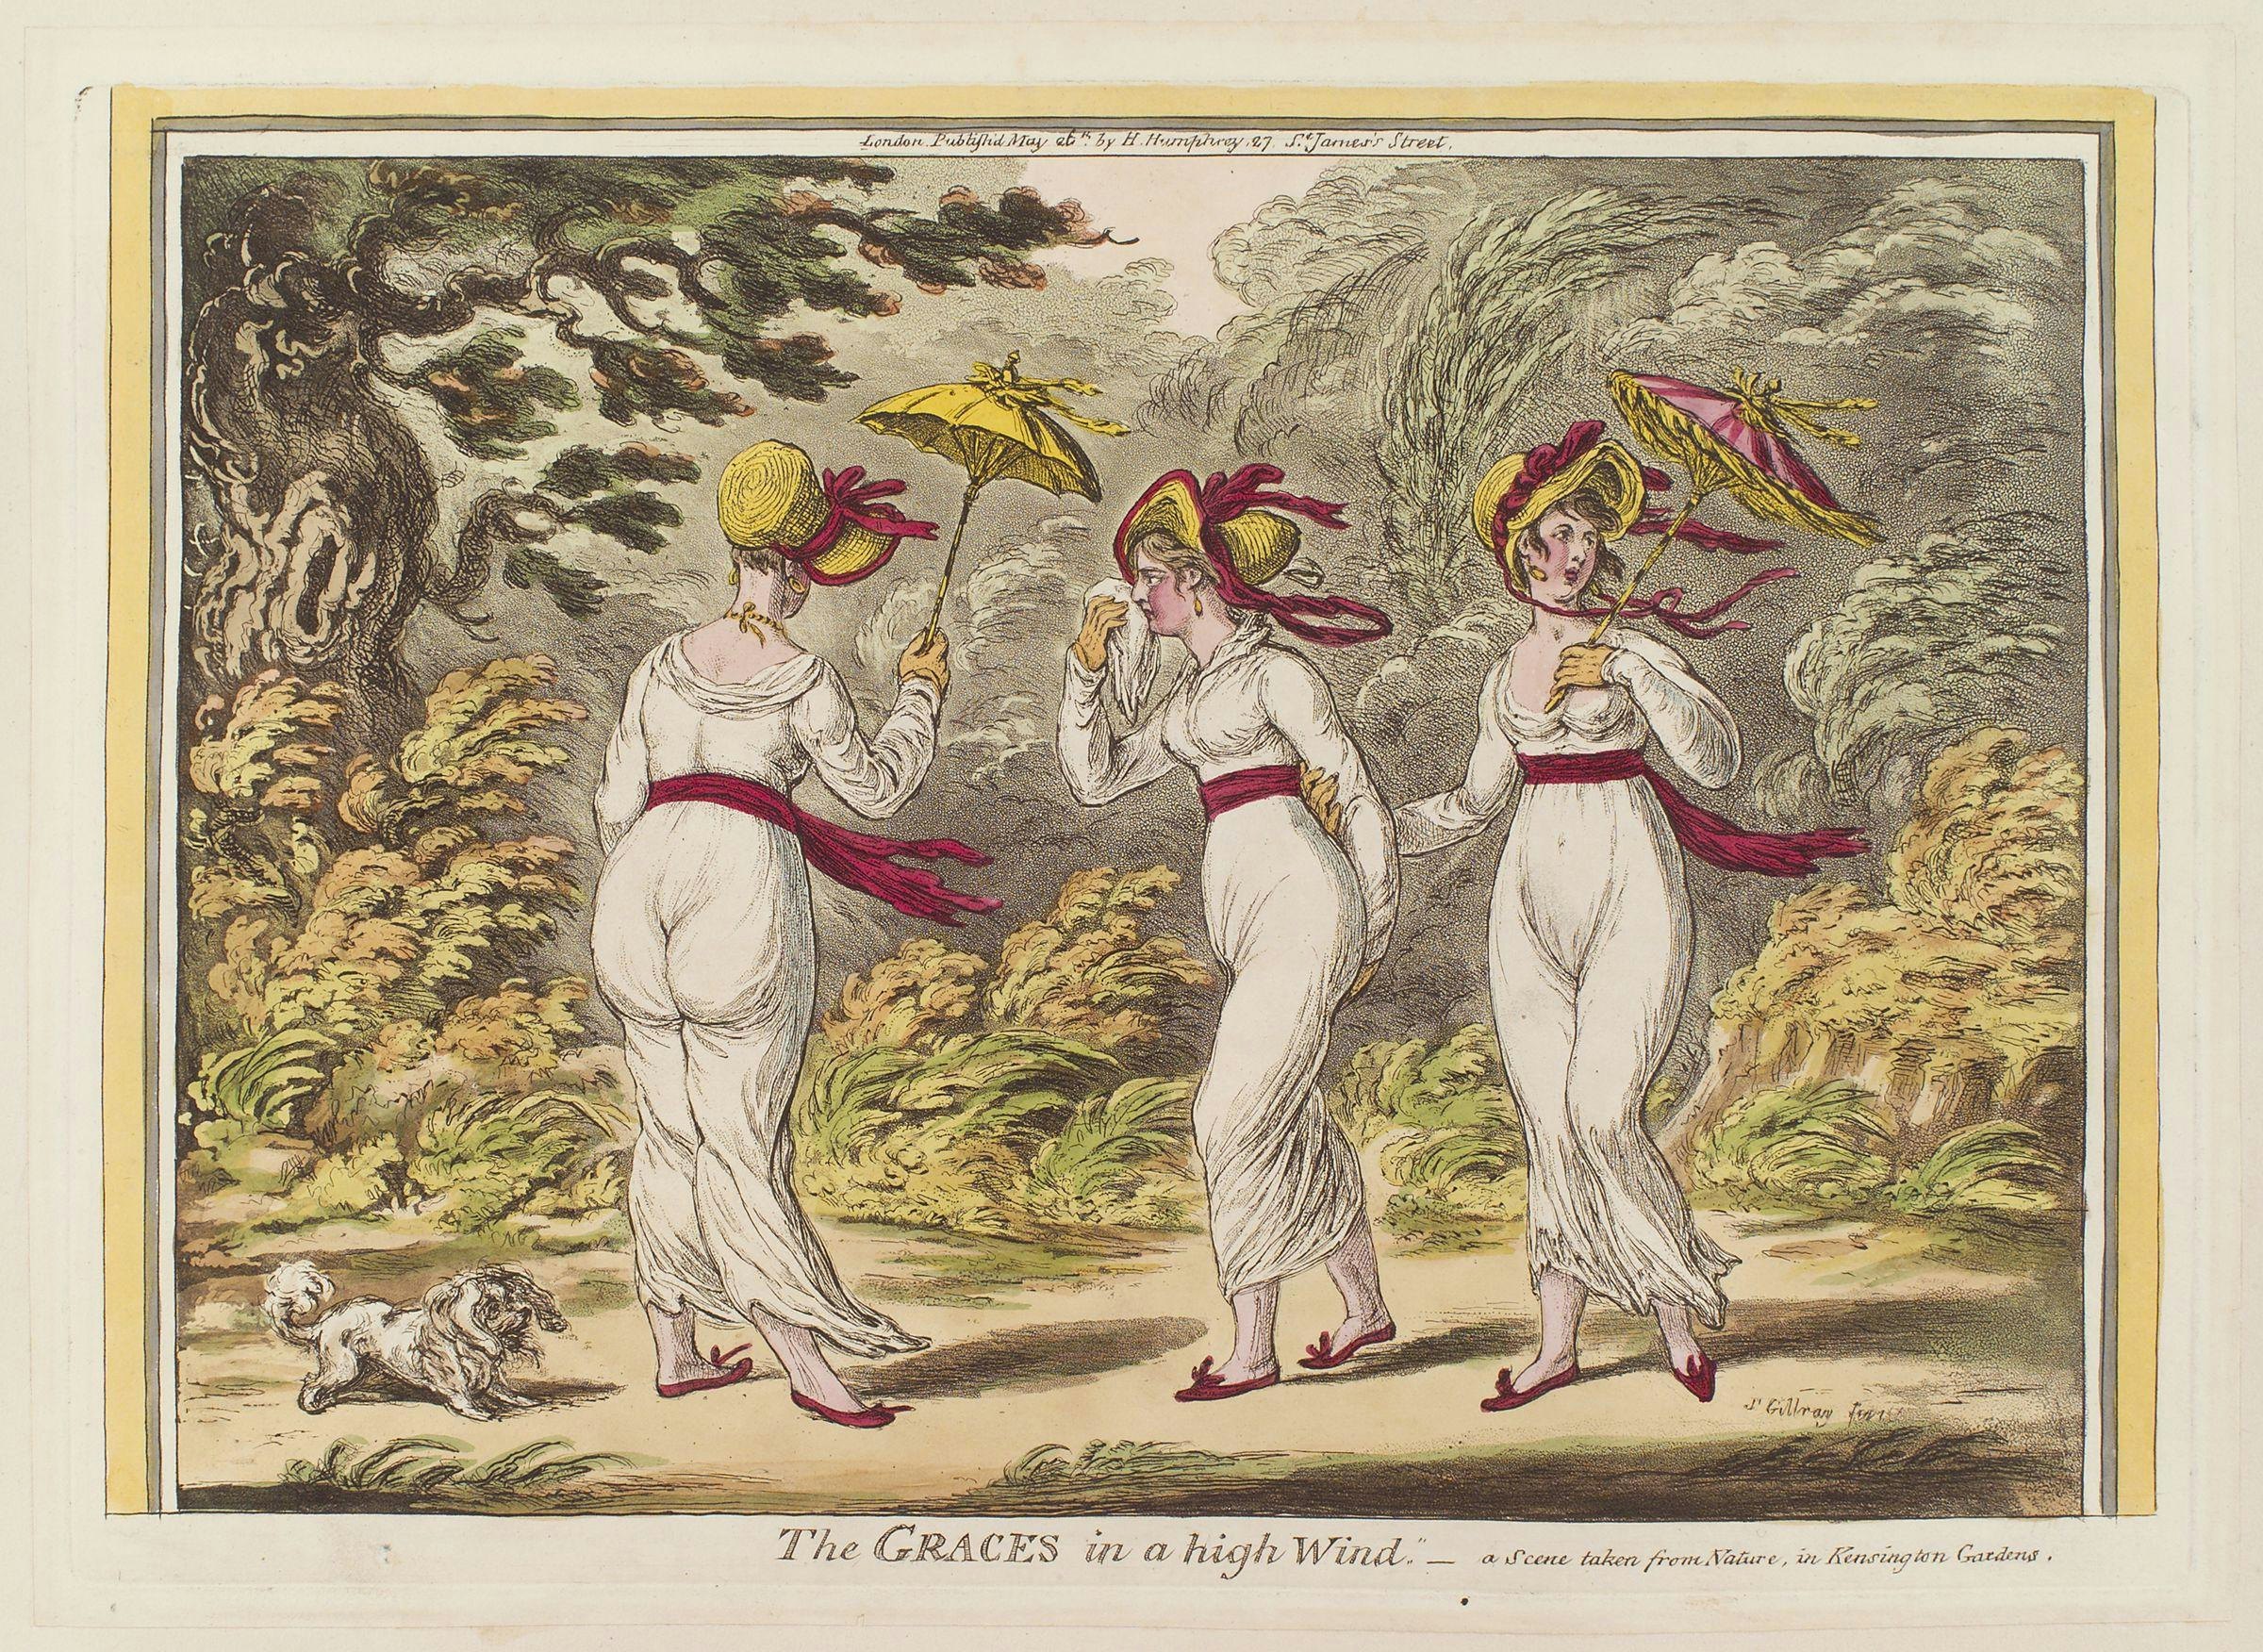 Children's Underwear in Regency England - Jane Austen articles and blog